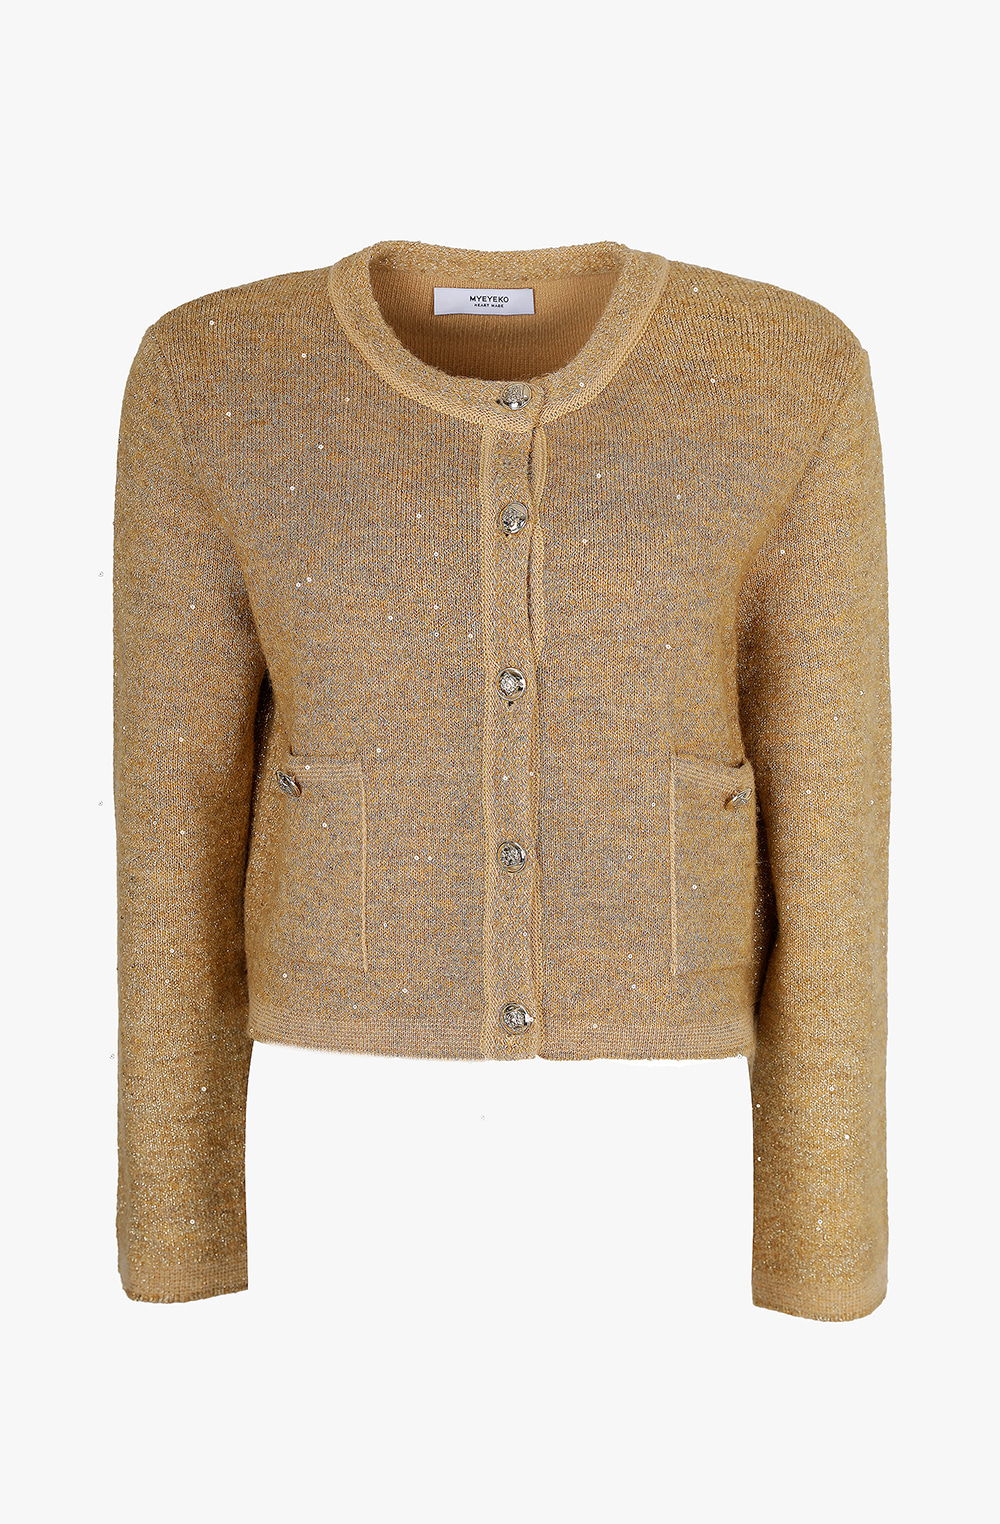 HIGH QUALITY LINE - Sequin Embellished Knit Jacket (GOLD)